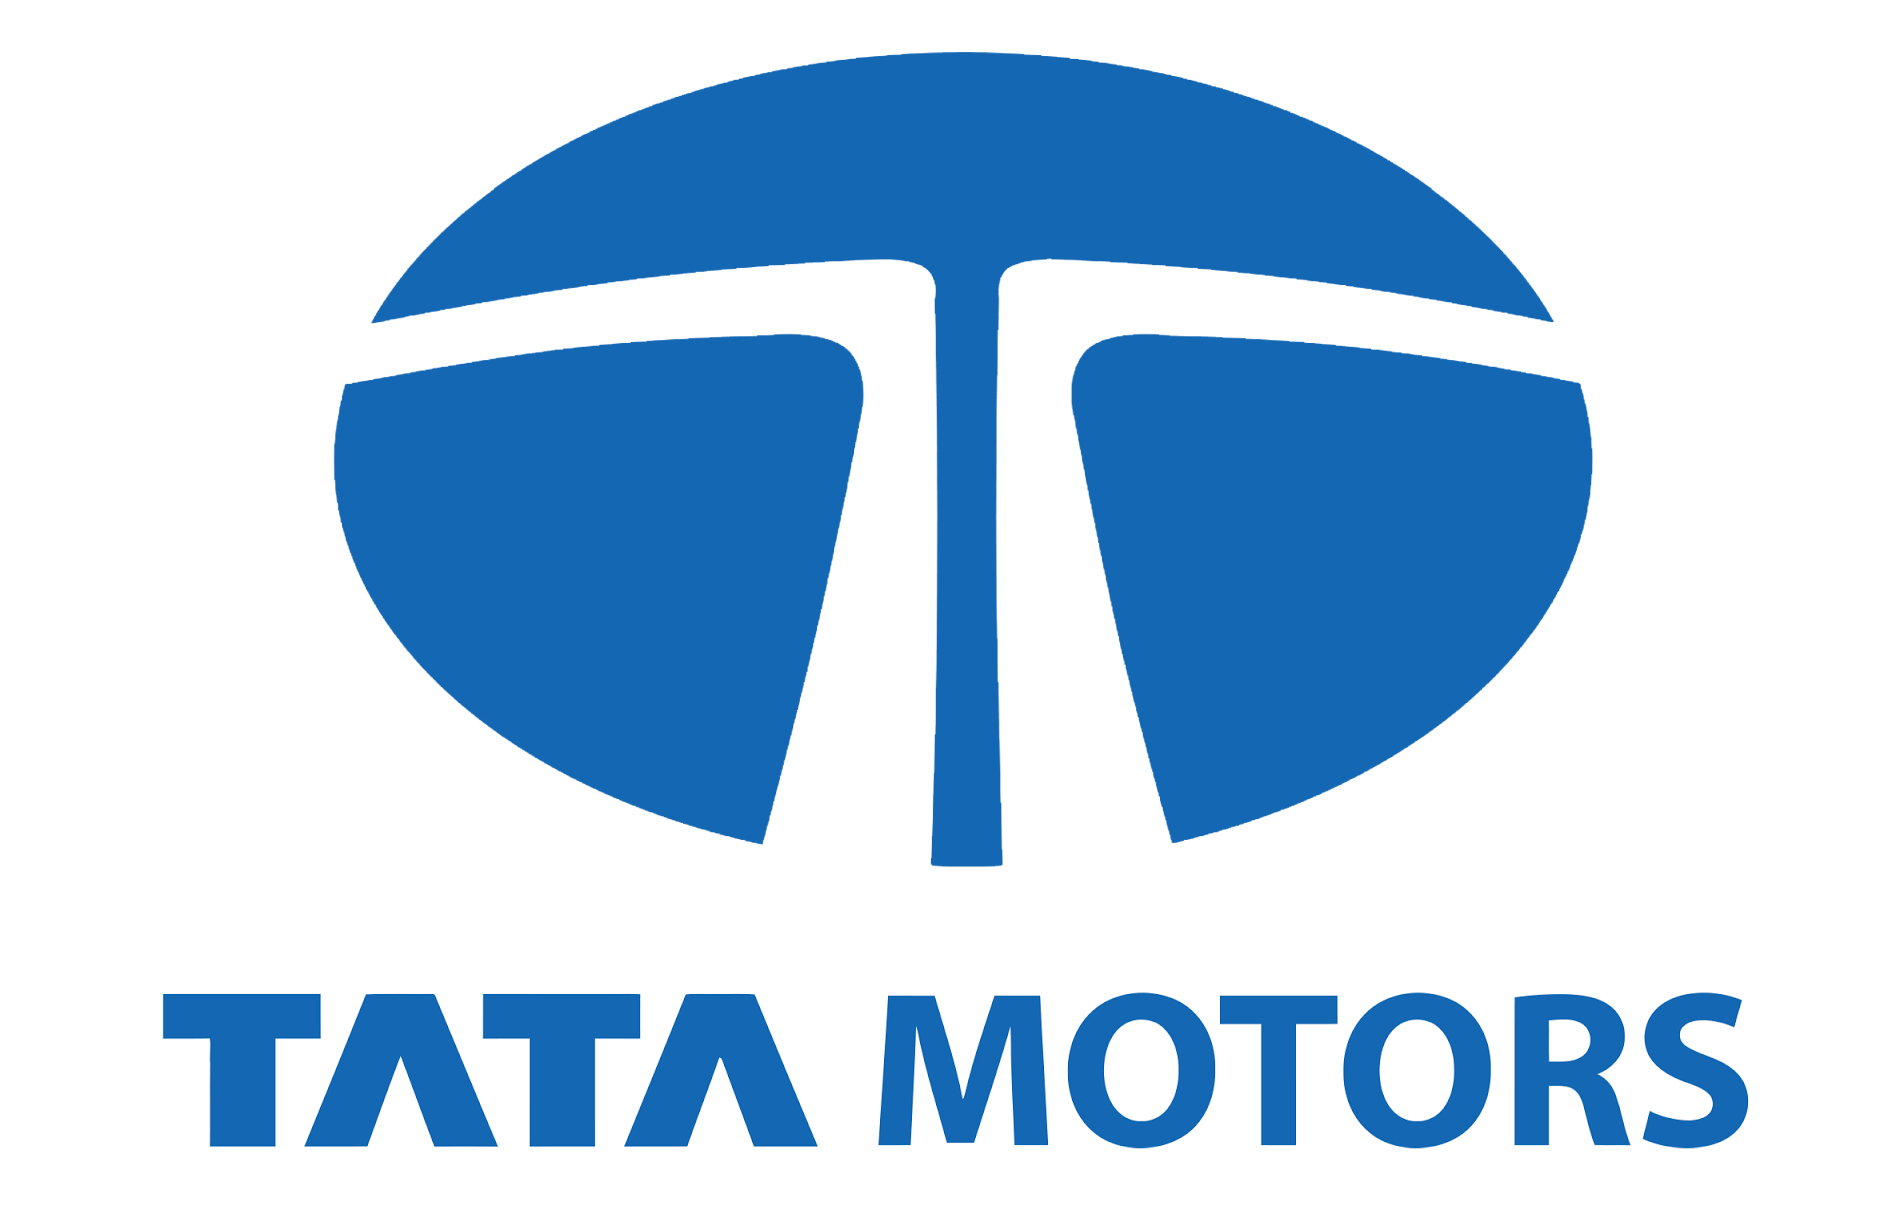 Siva Sankar Motors - Tata Motors Dealer|Show Room|Automotive